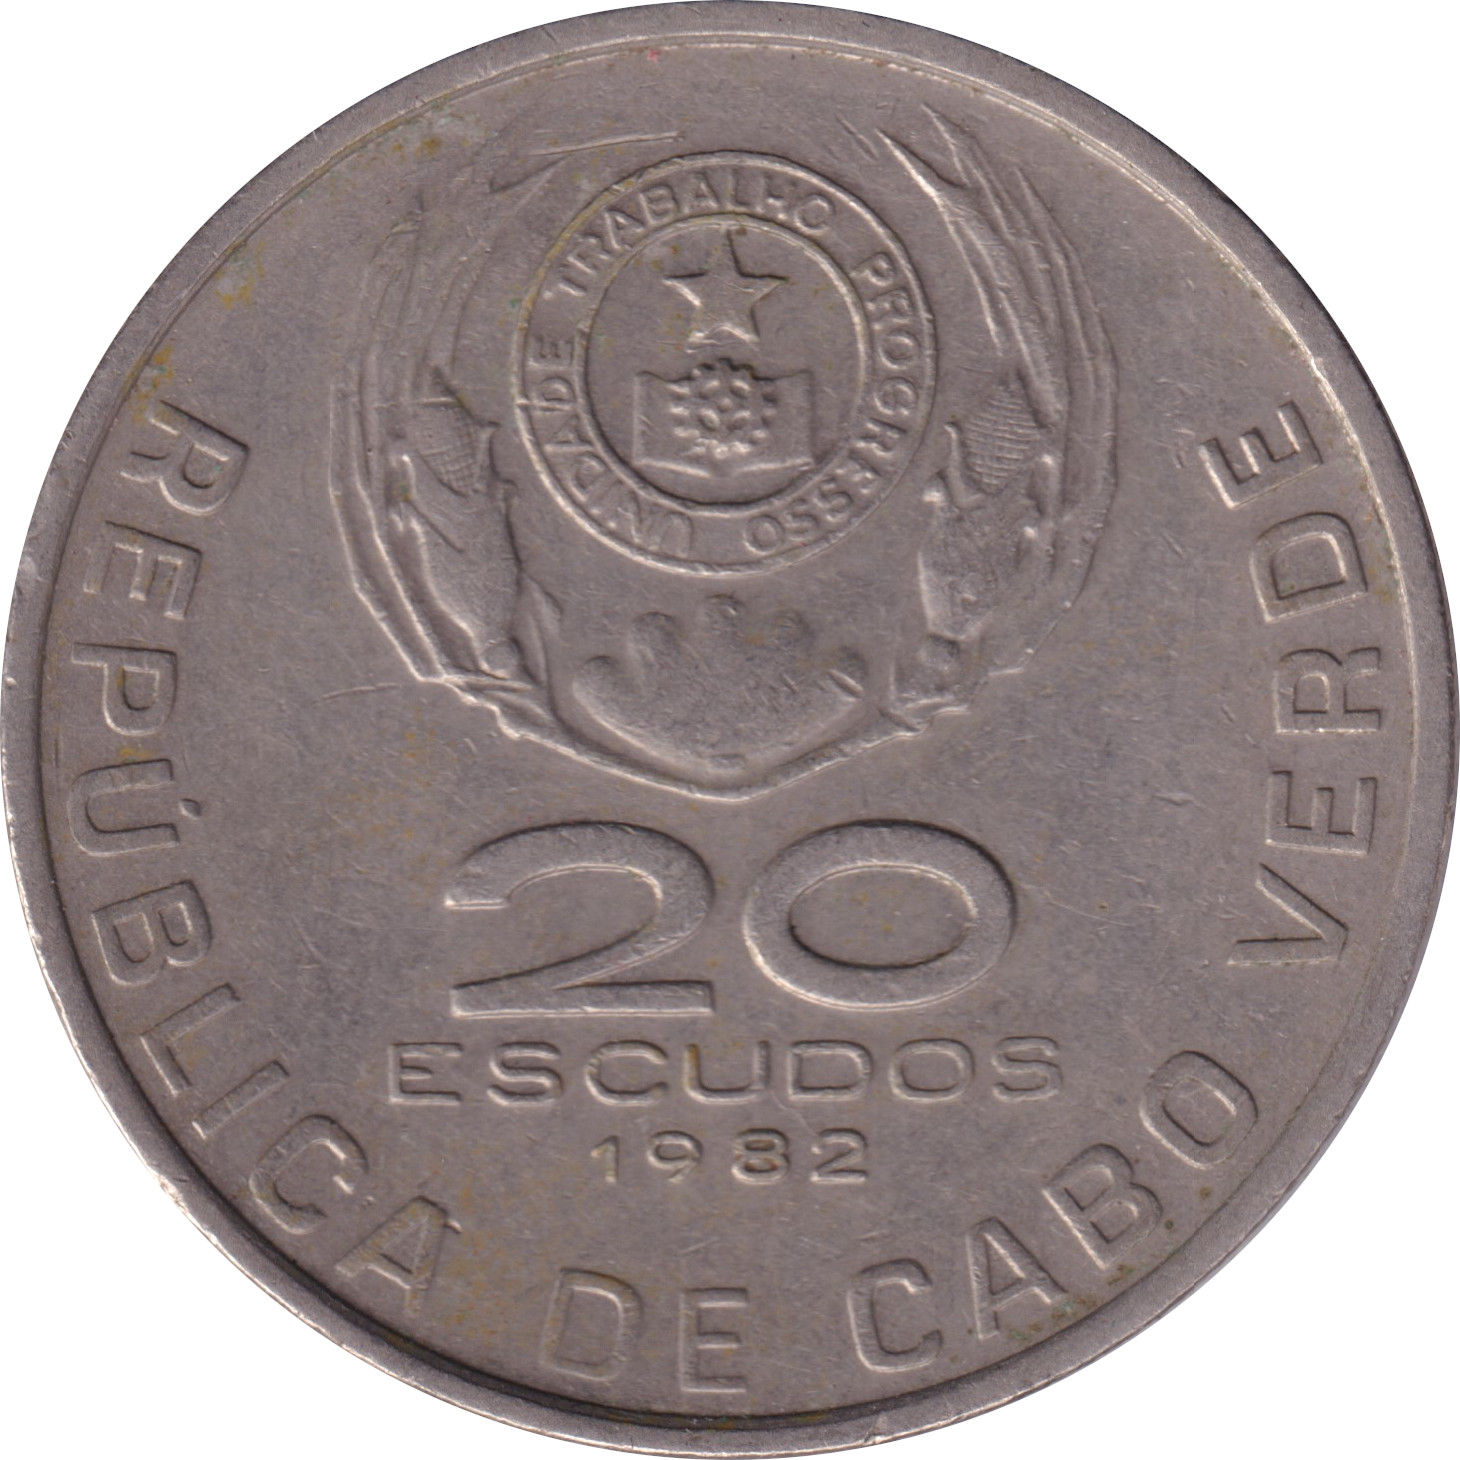 20 escudos - Dominicos Ramos